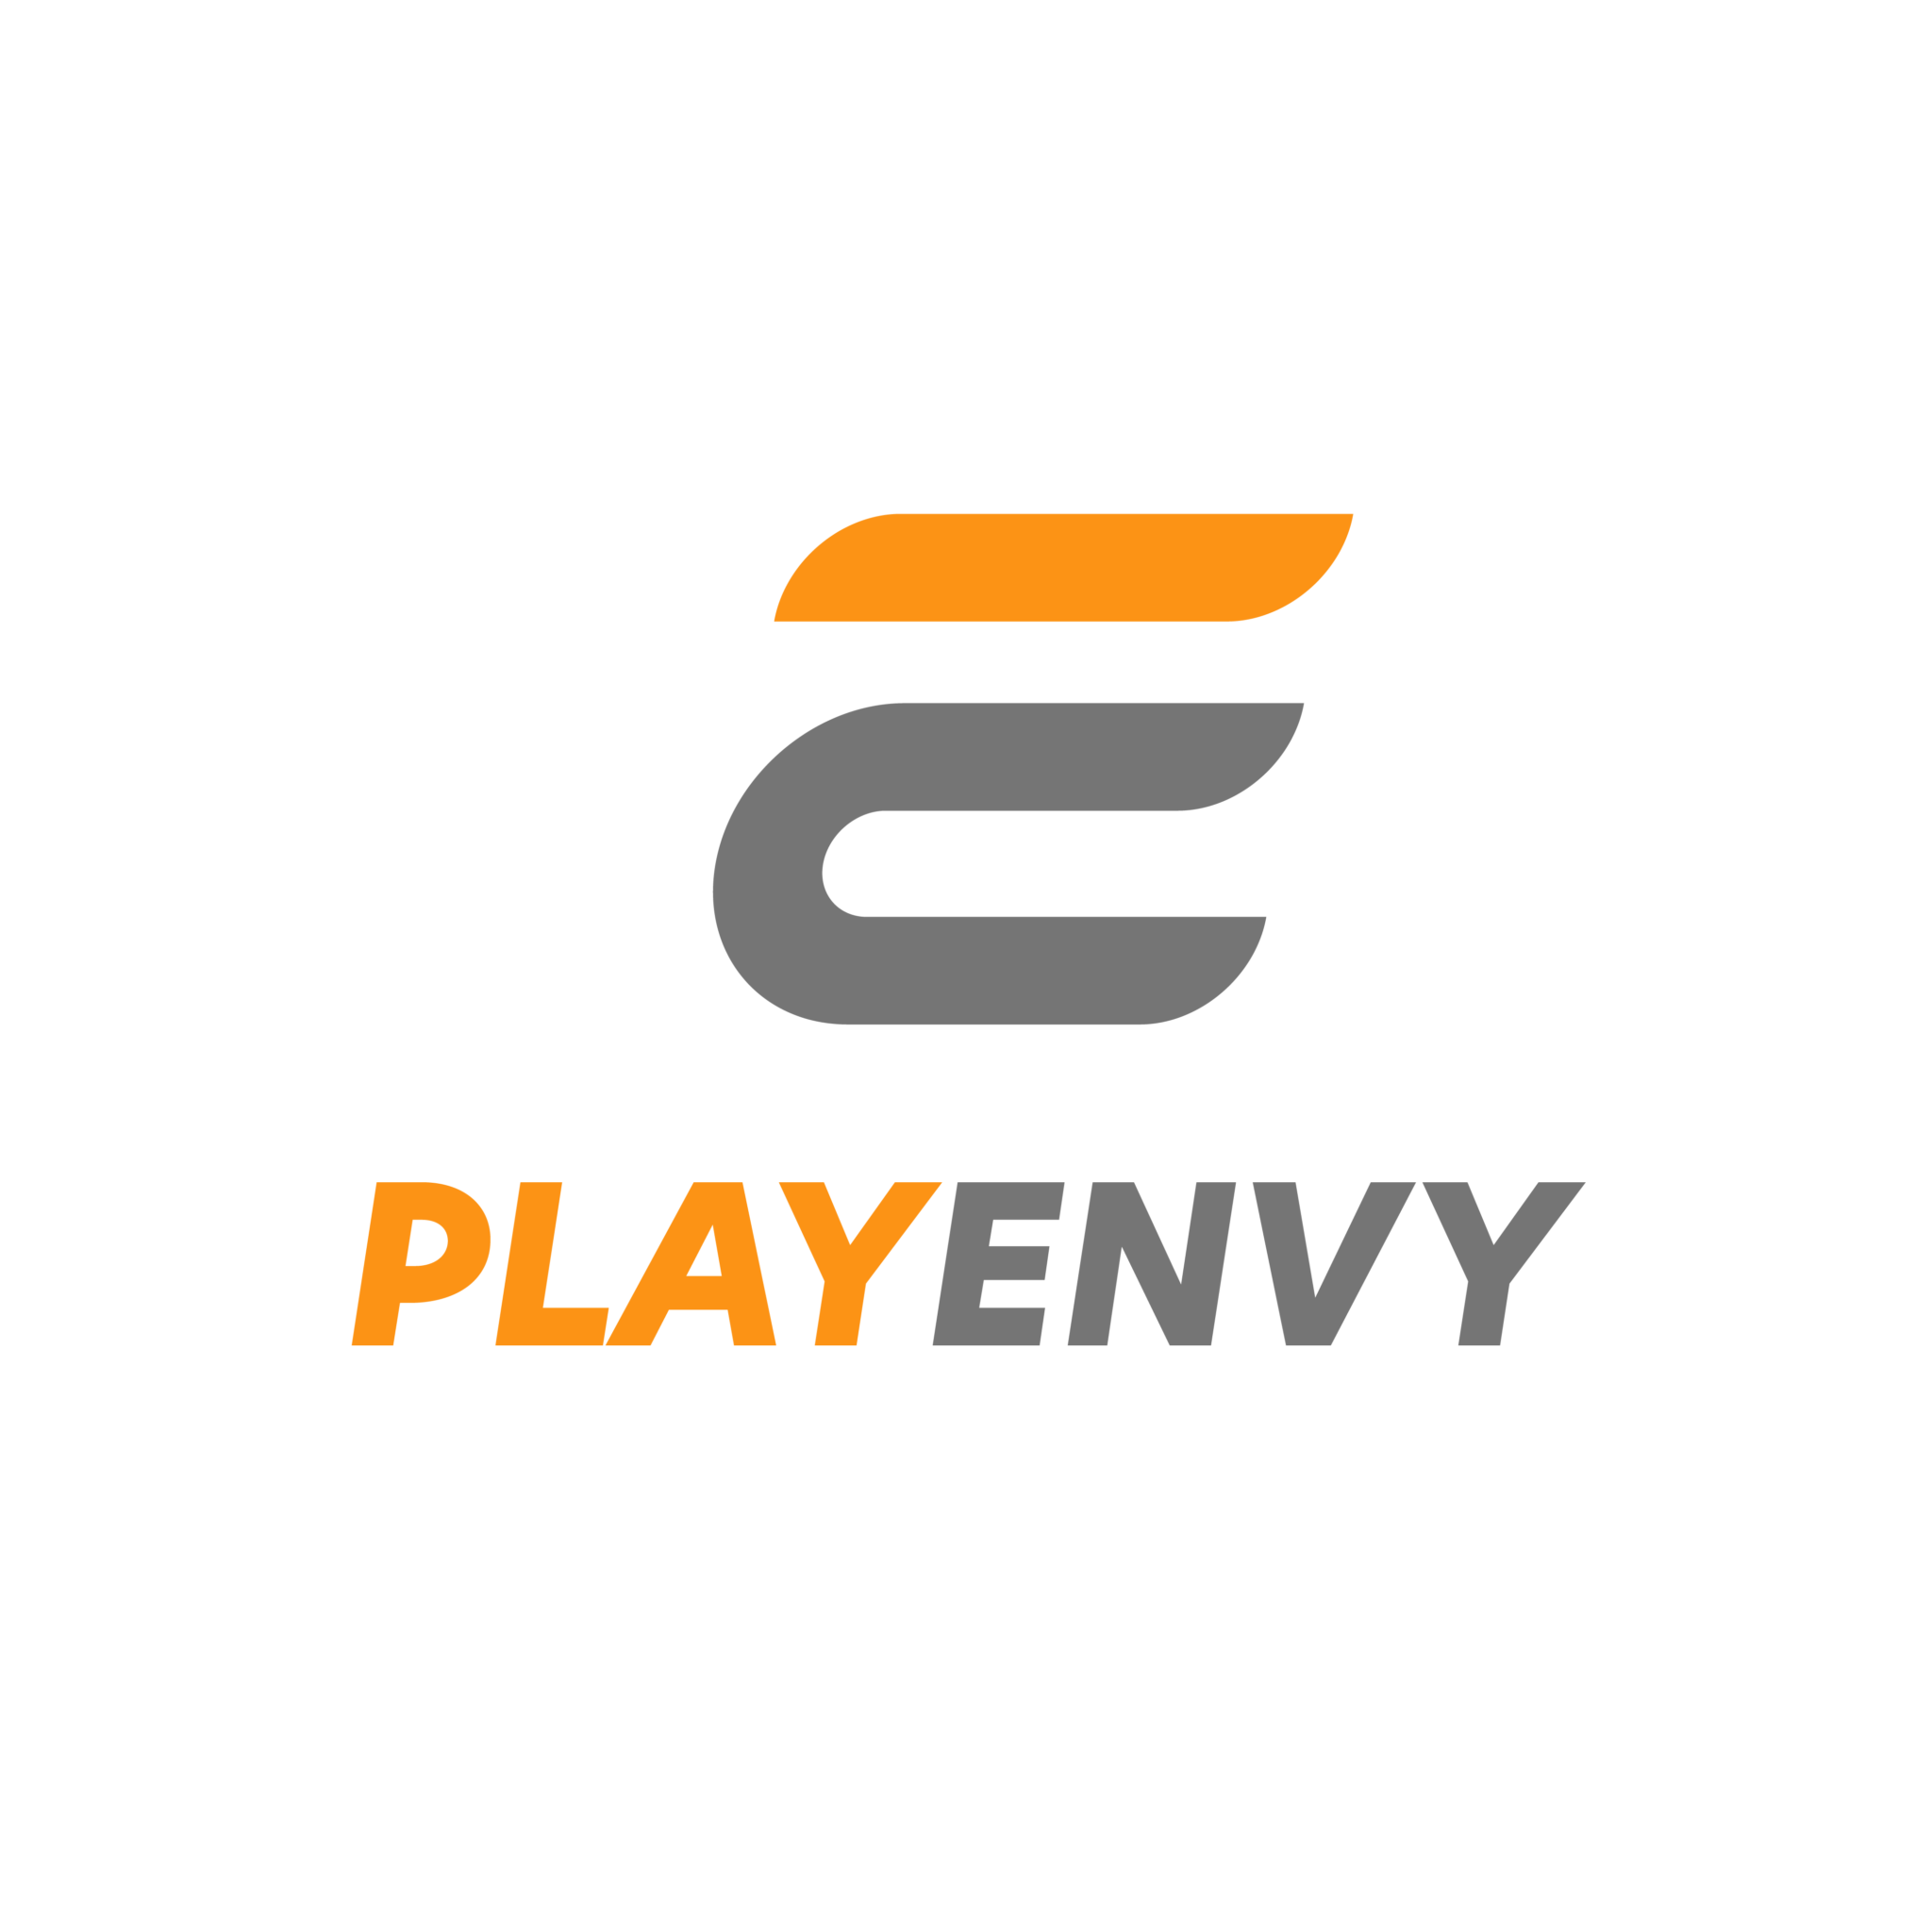 Play Envy